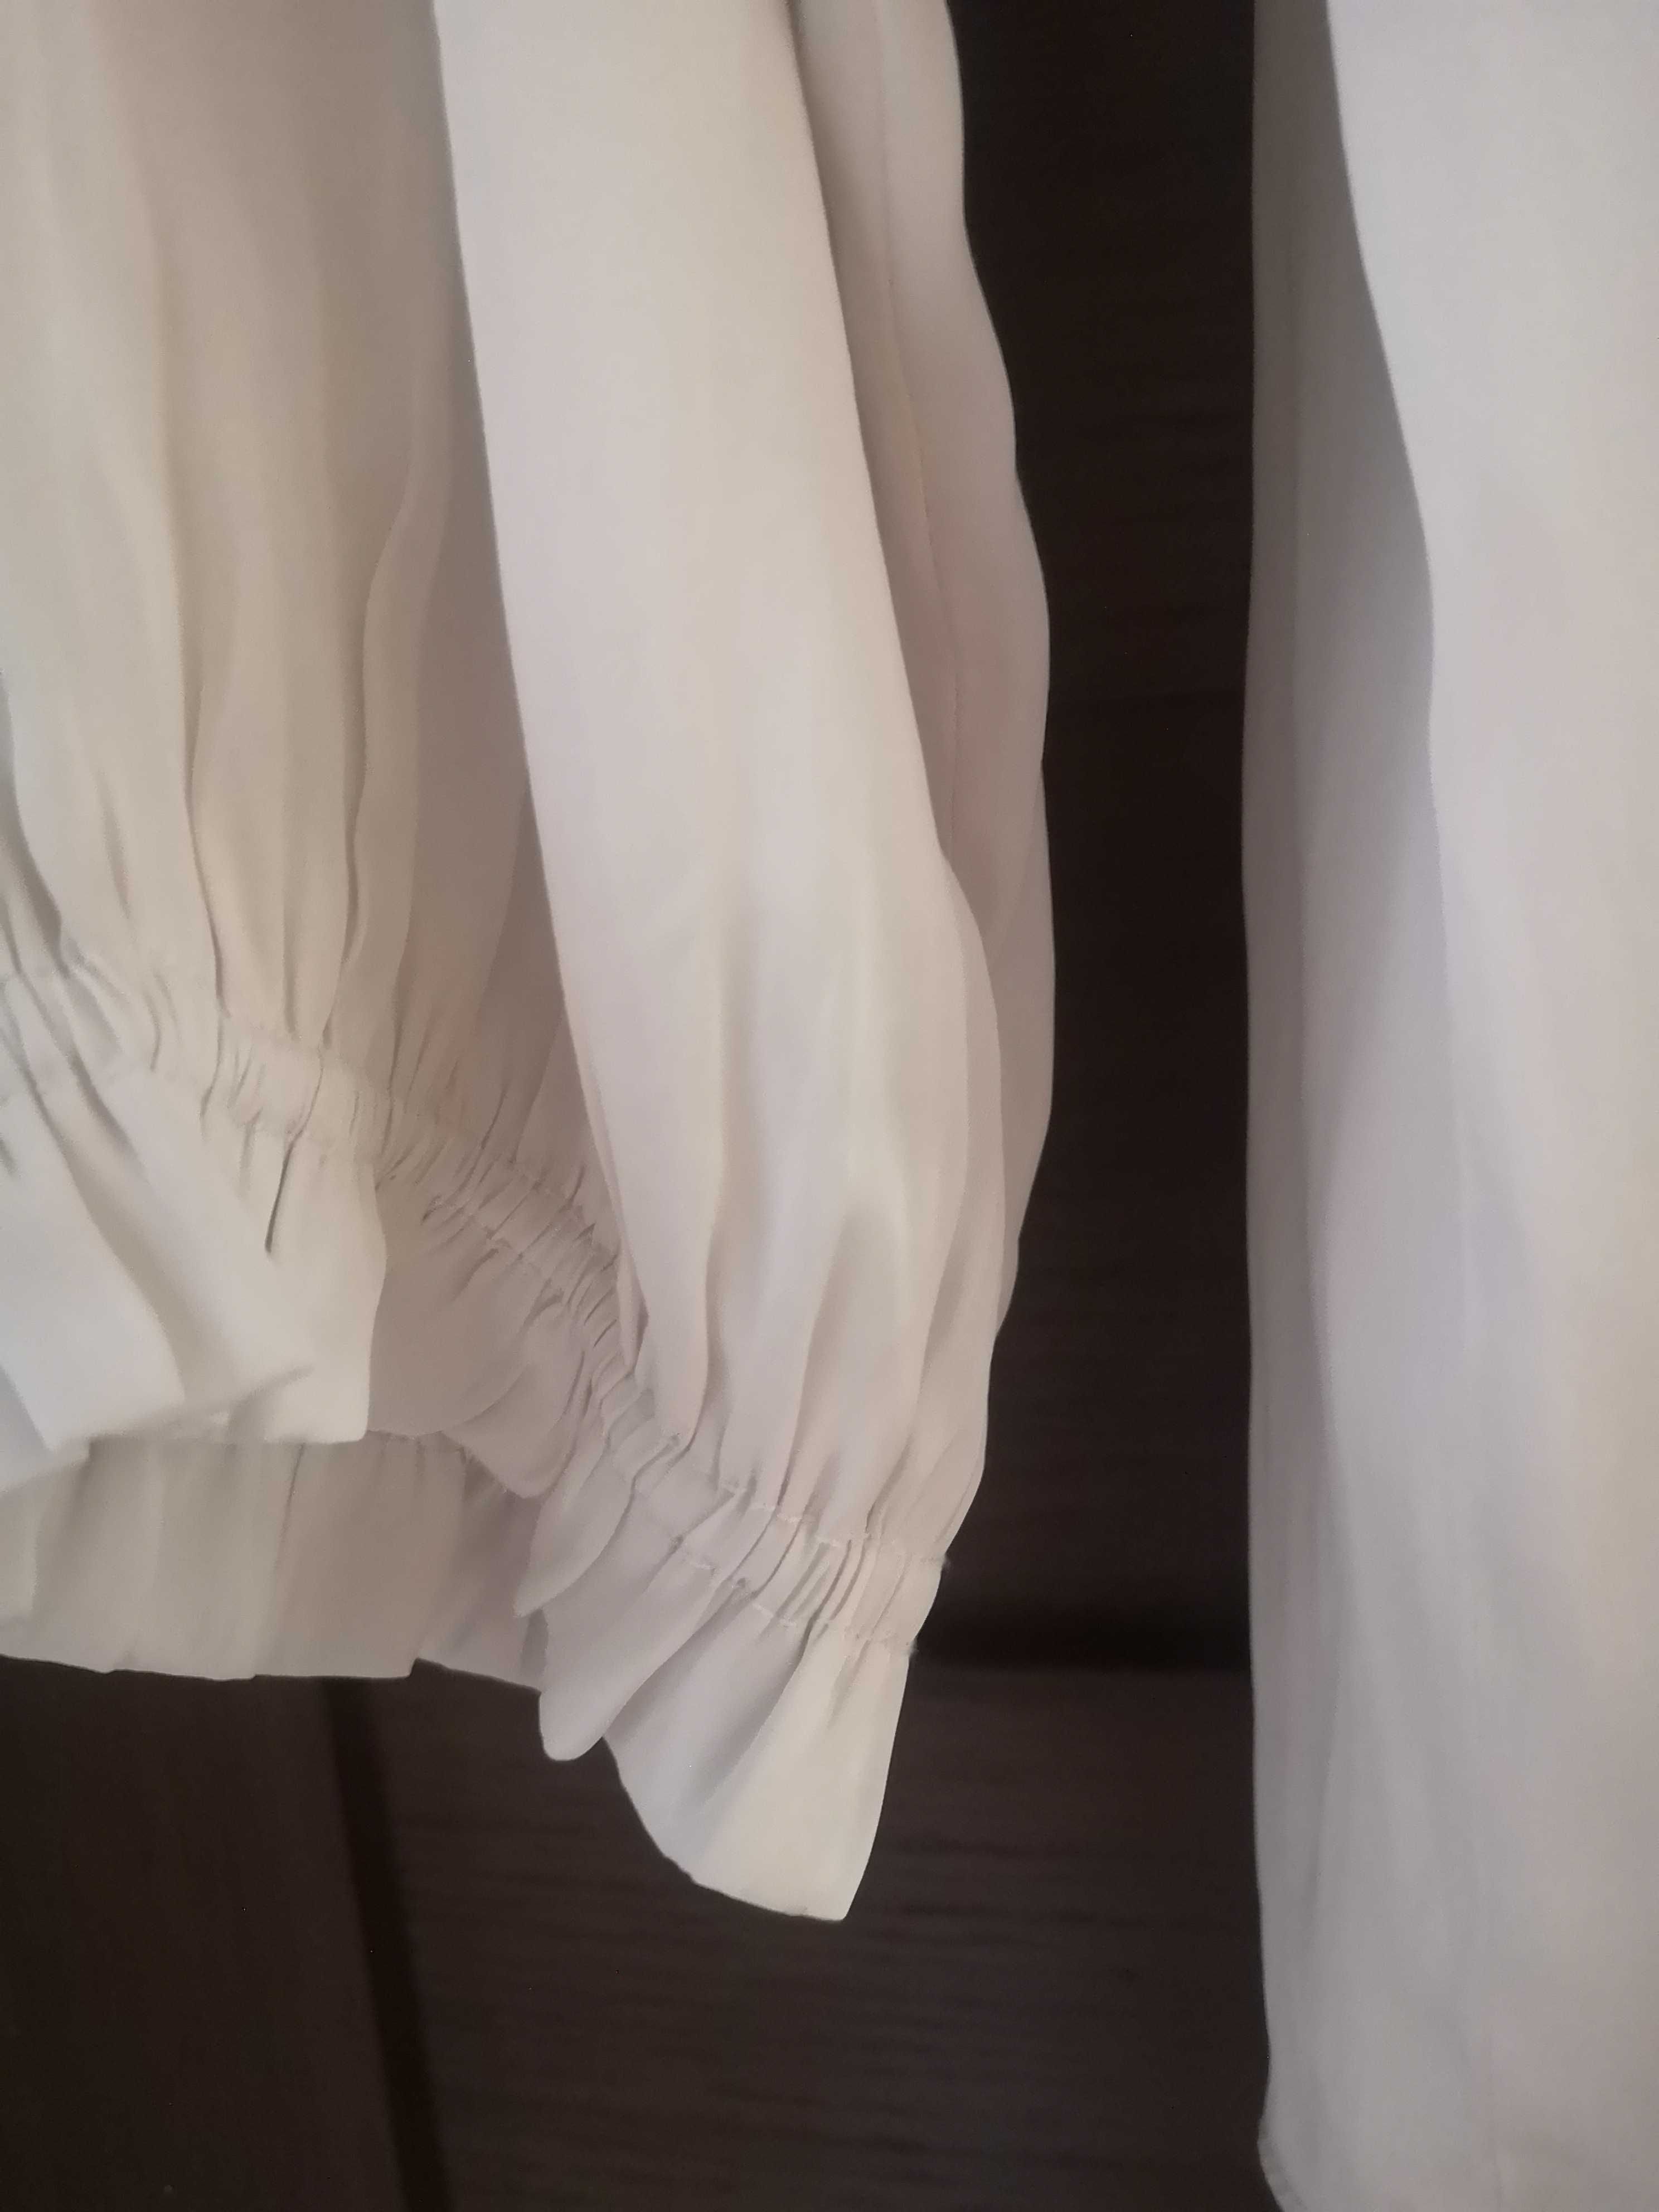 Kremowa bluzka, elegancka, z materiału przypominającego jedwab